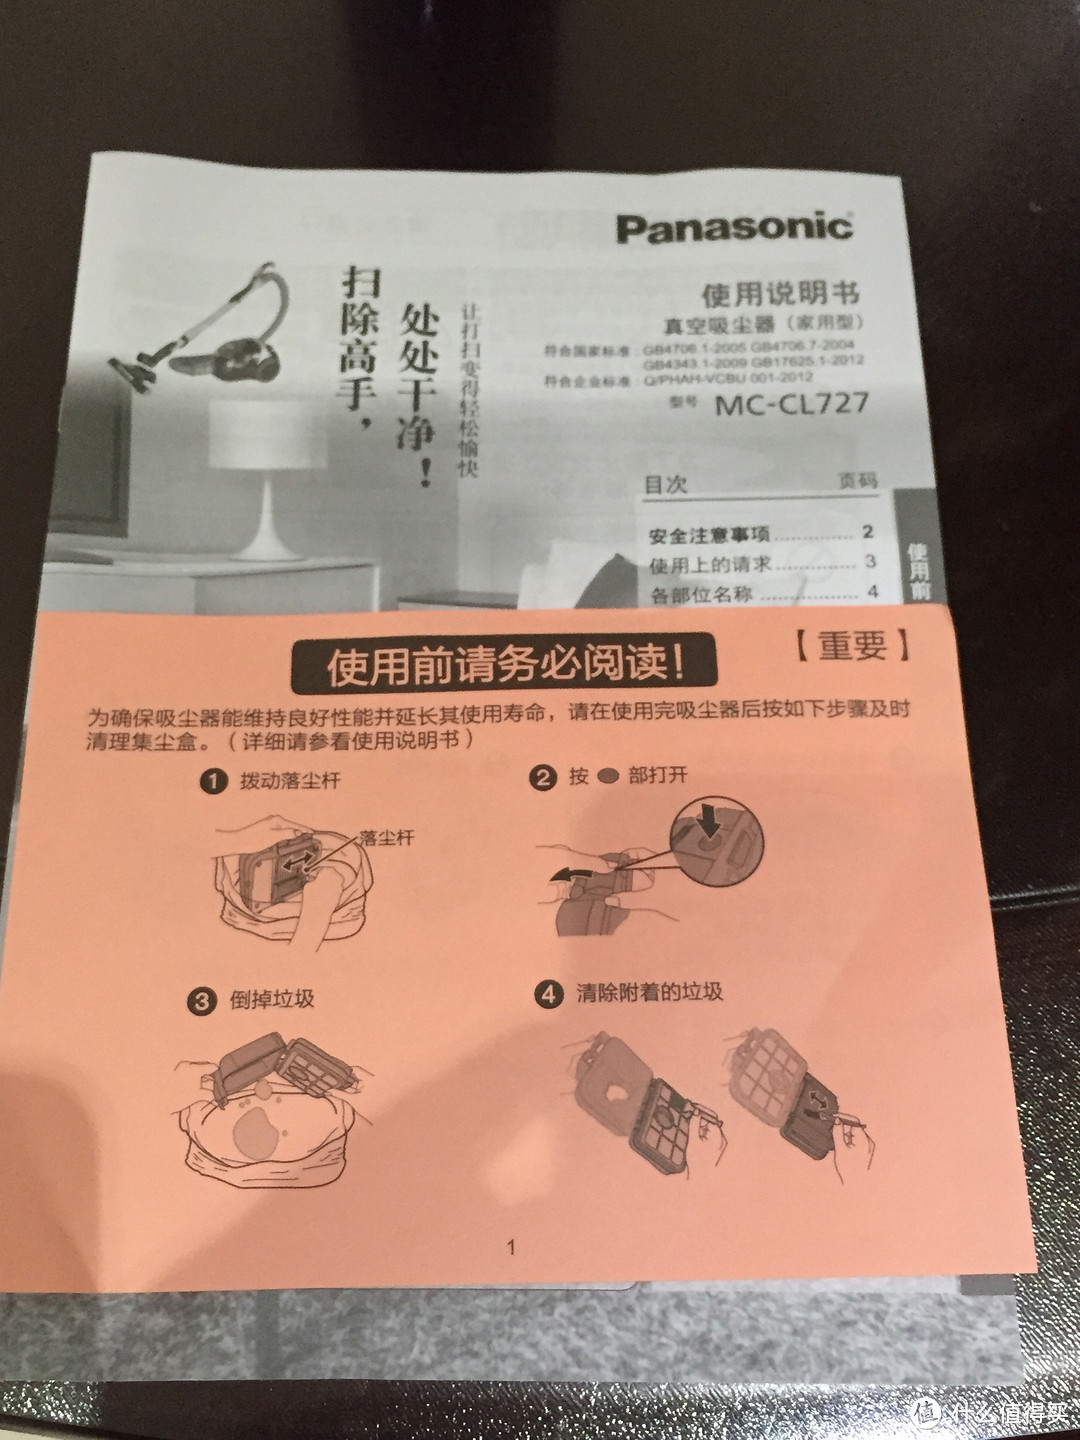  Panasonic 松下 卧式吸尘器 MC-CL727